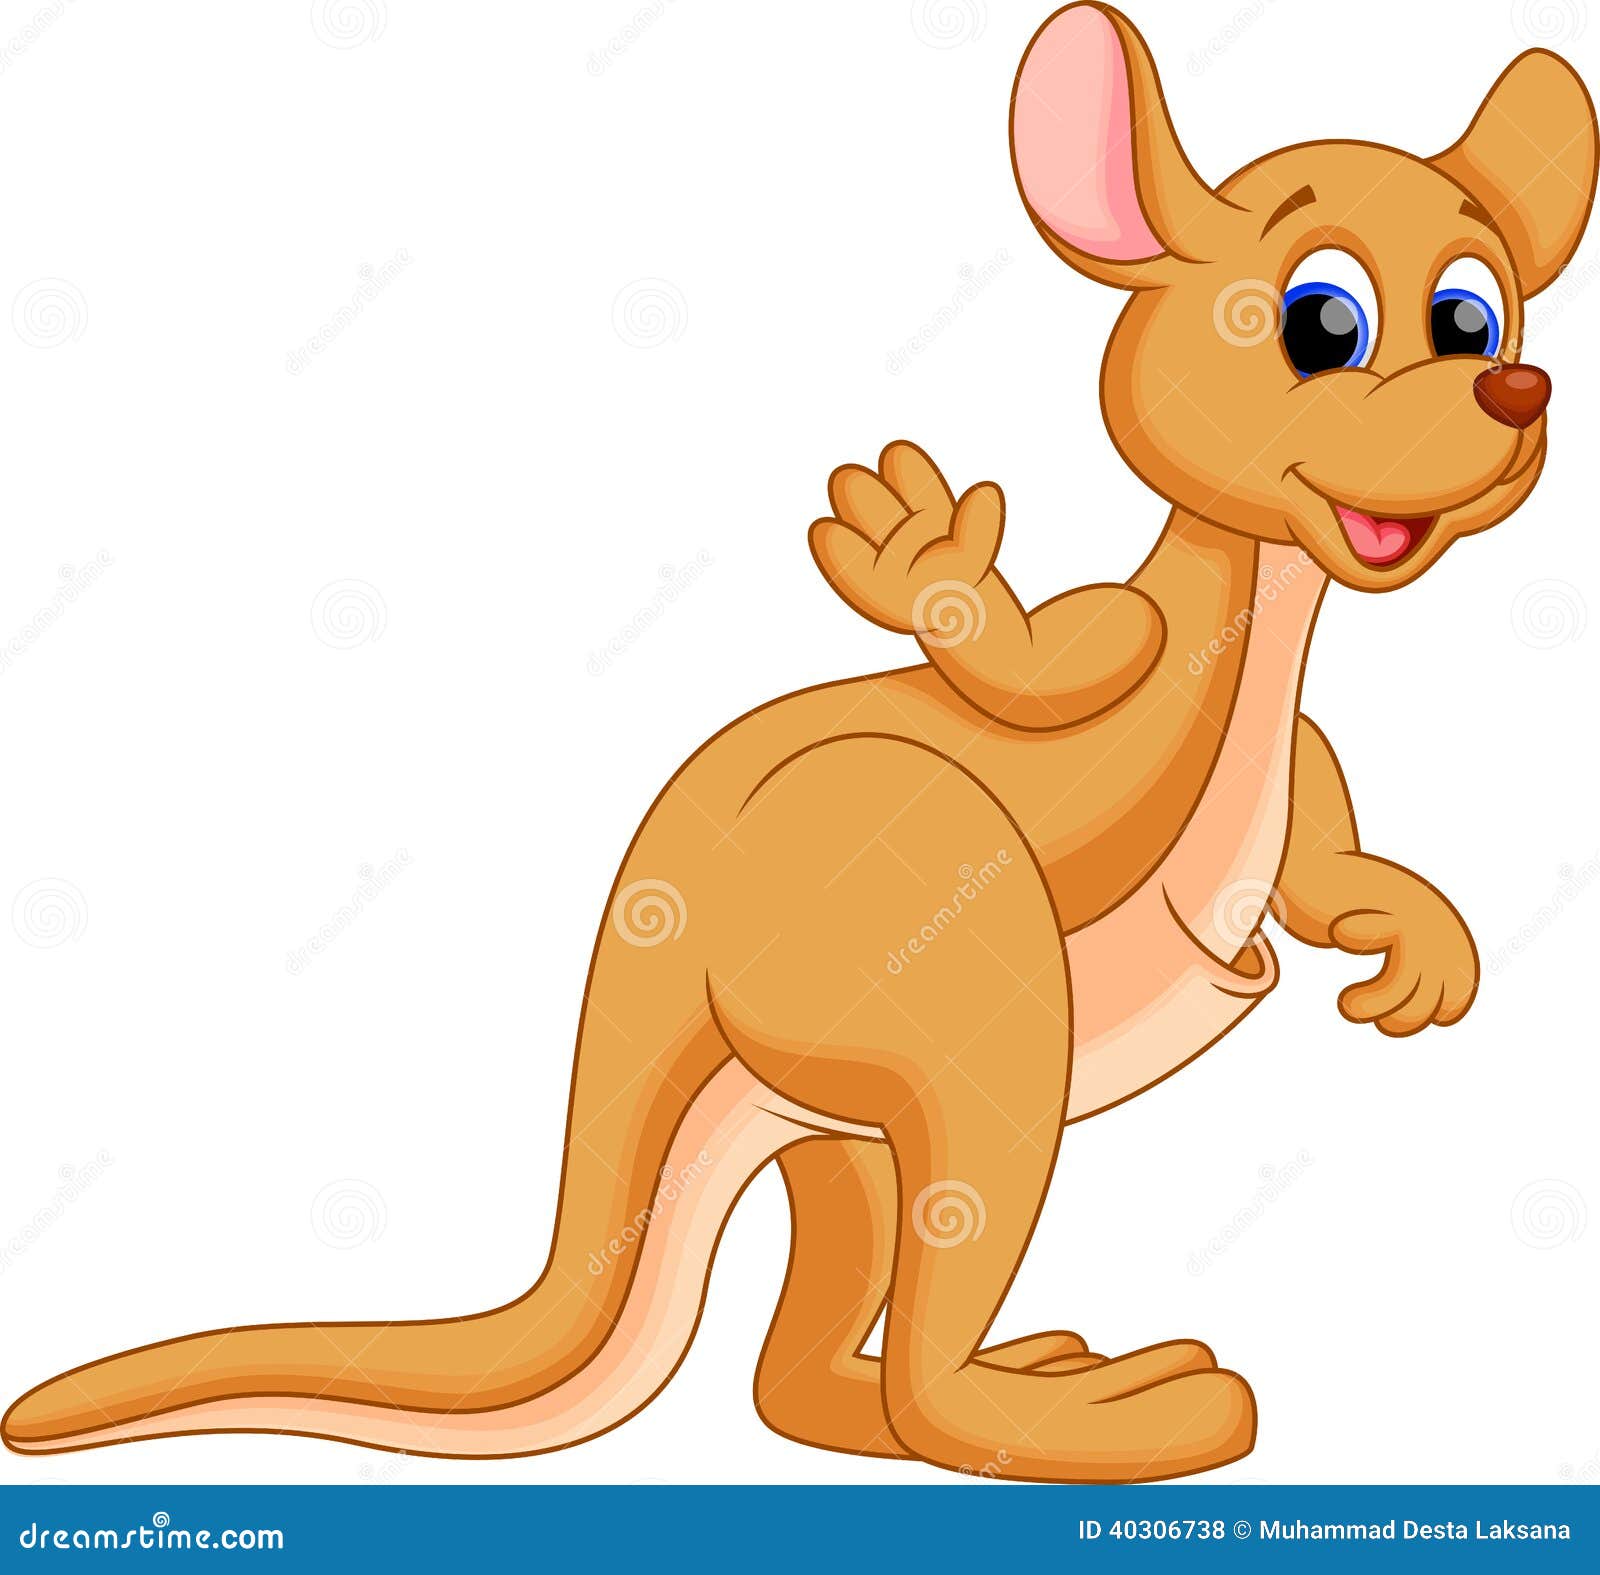 Funny kangaroo cartoon stock illustration. Illustration of kangaroo -  40306738